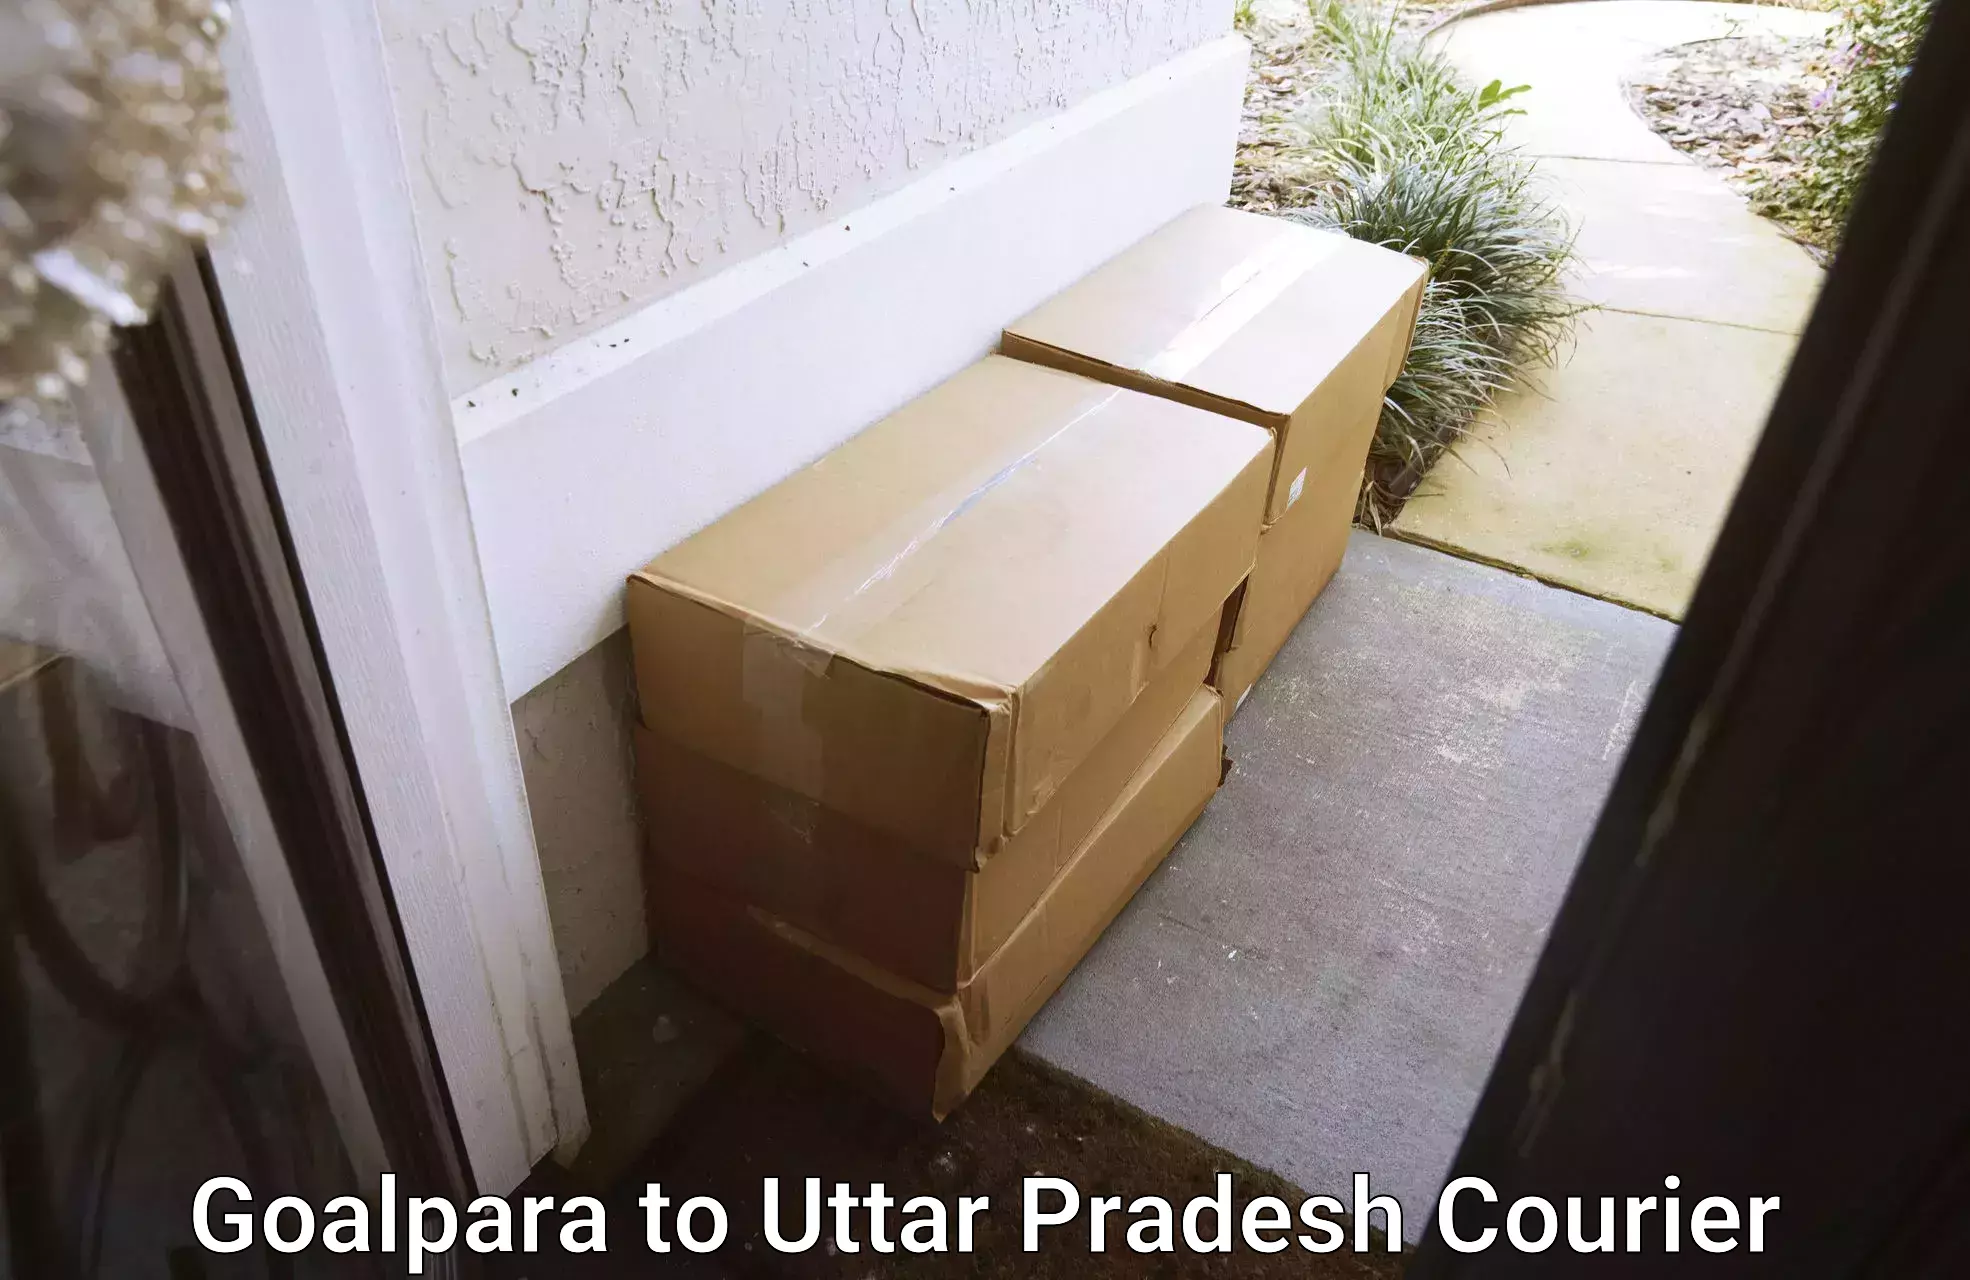 Reliable courier services Goalpara to Balrampur